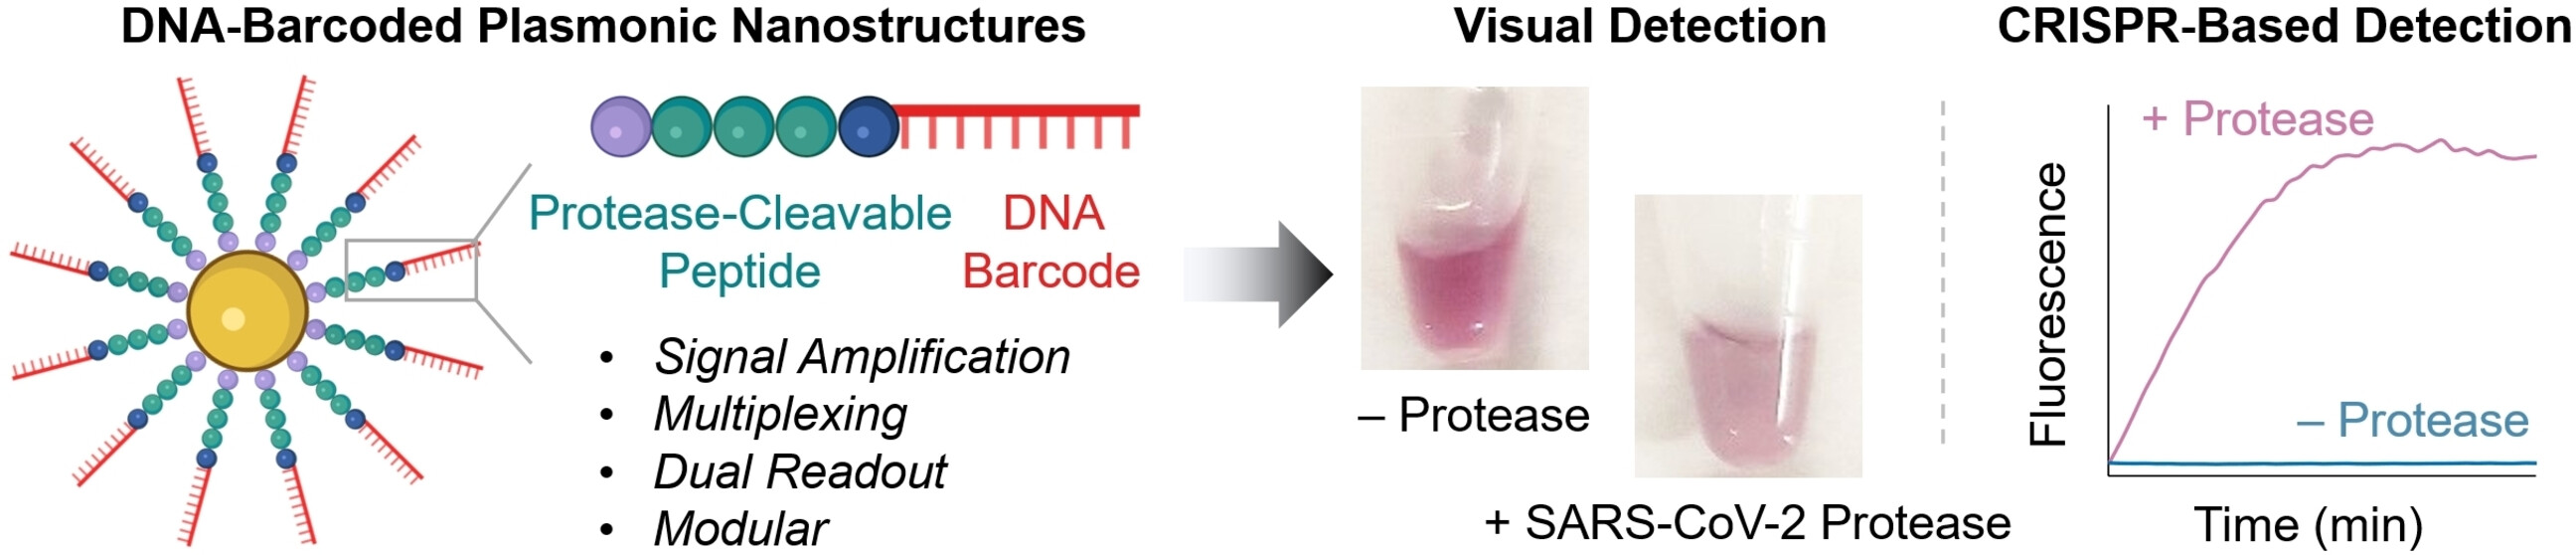 Nanoestructuras plasmónicas codificadas por ADN para la detección de proteasas basada en actividad